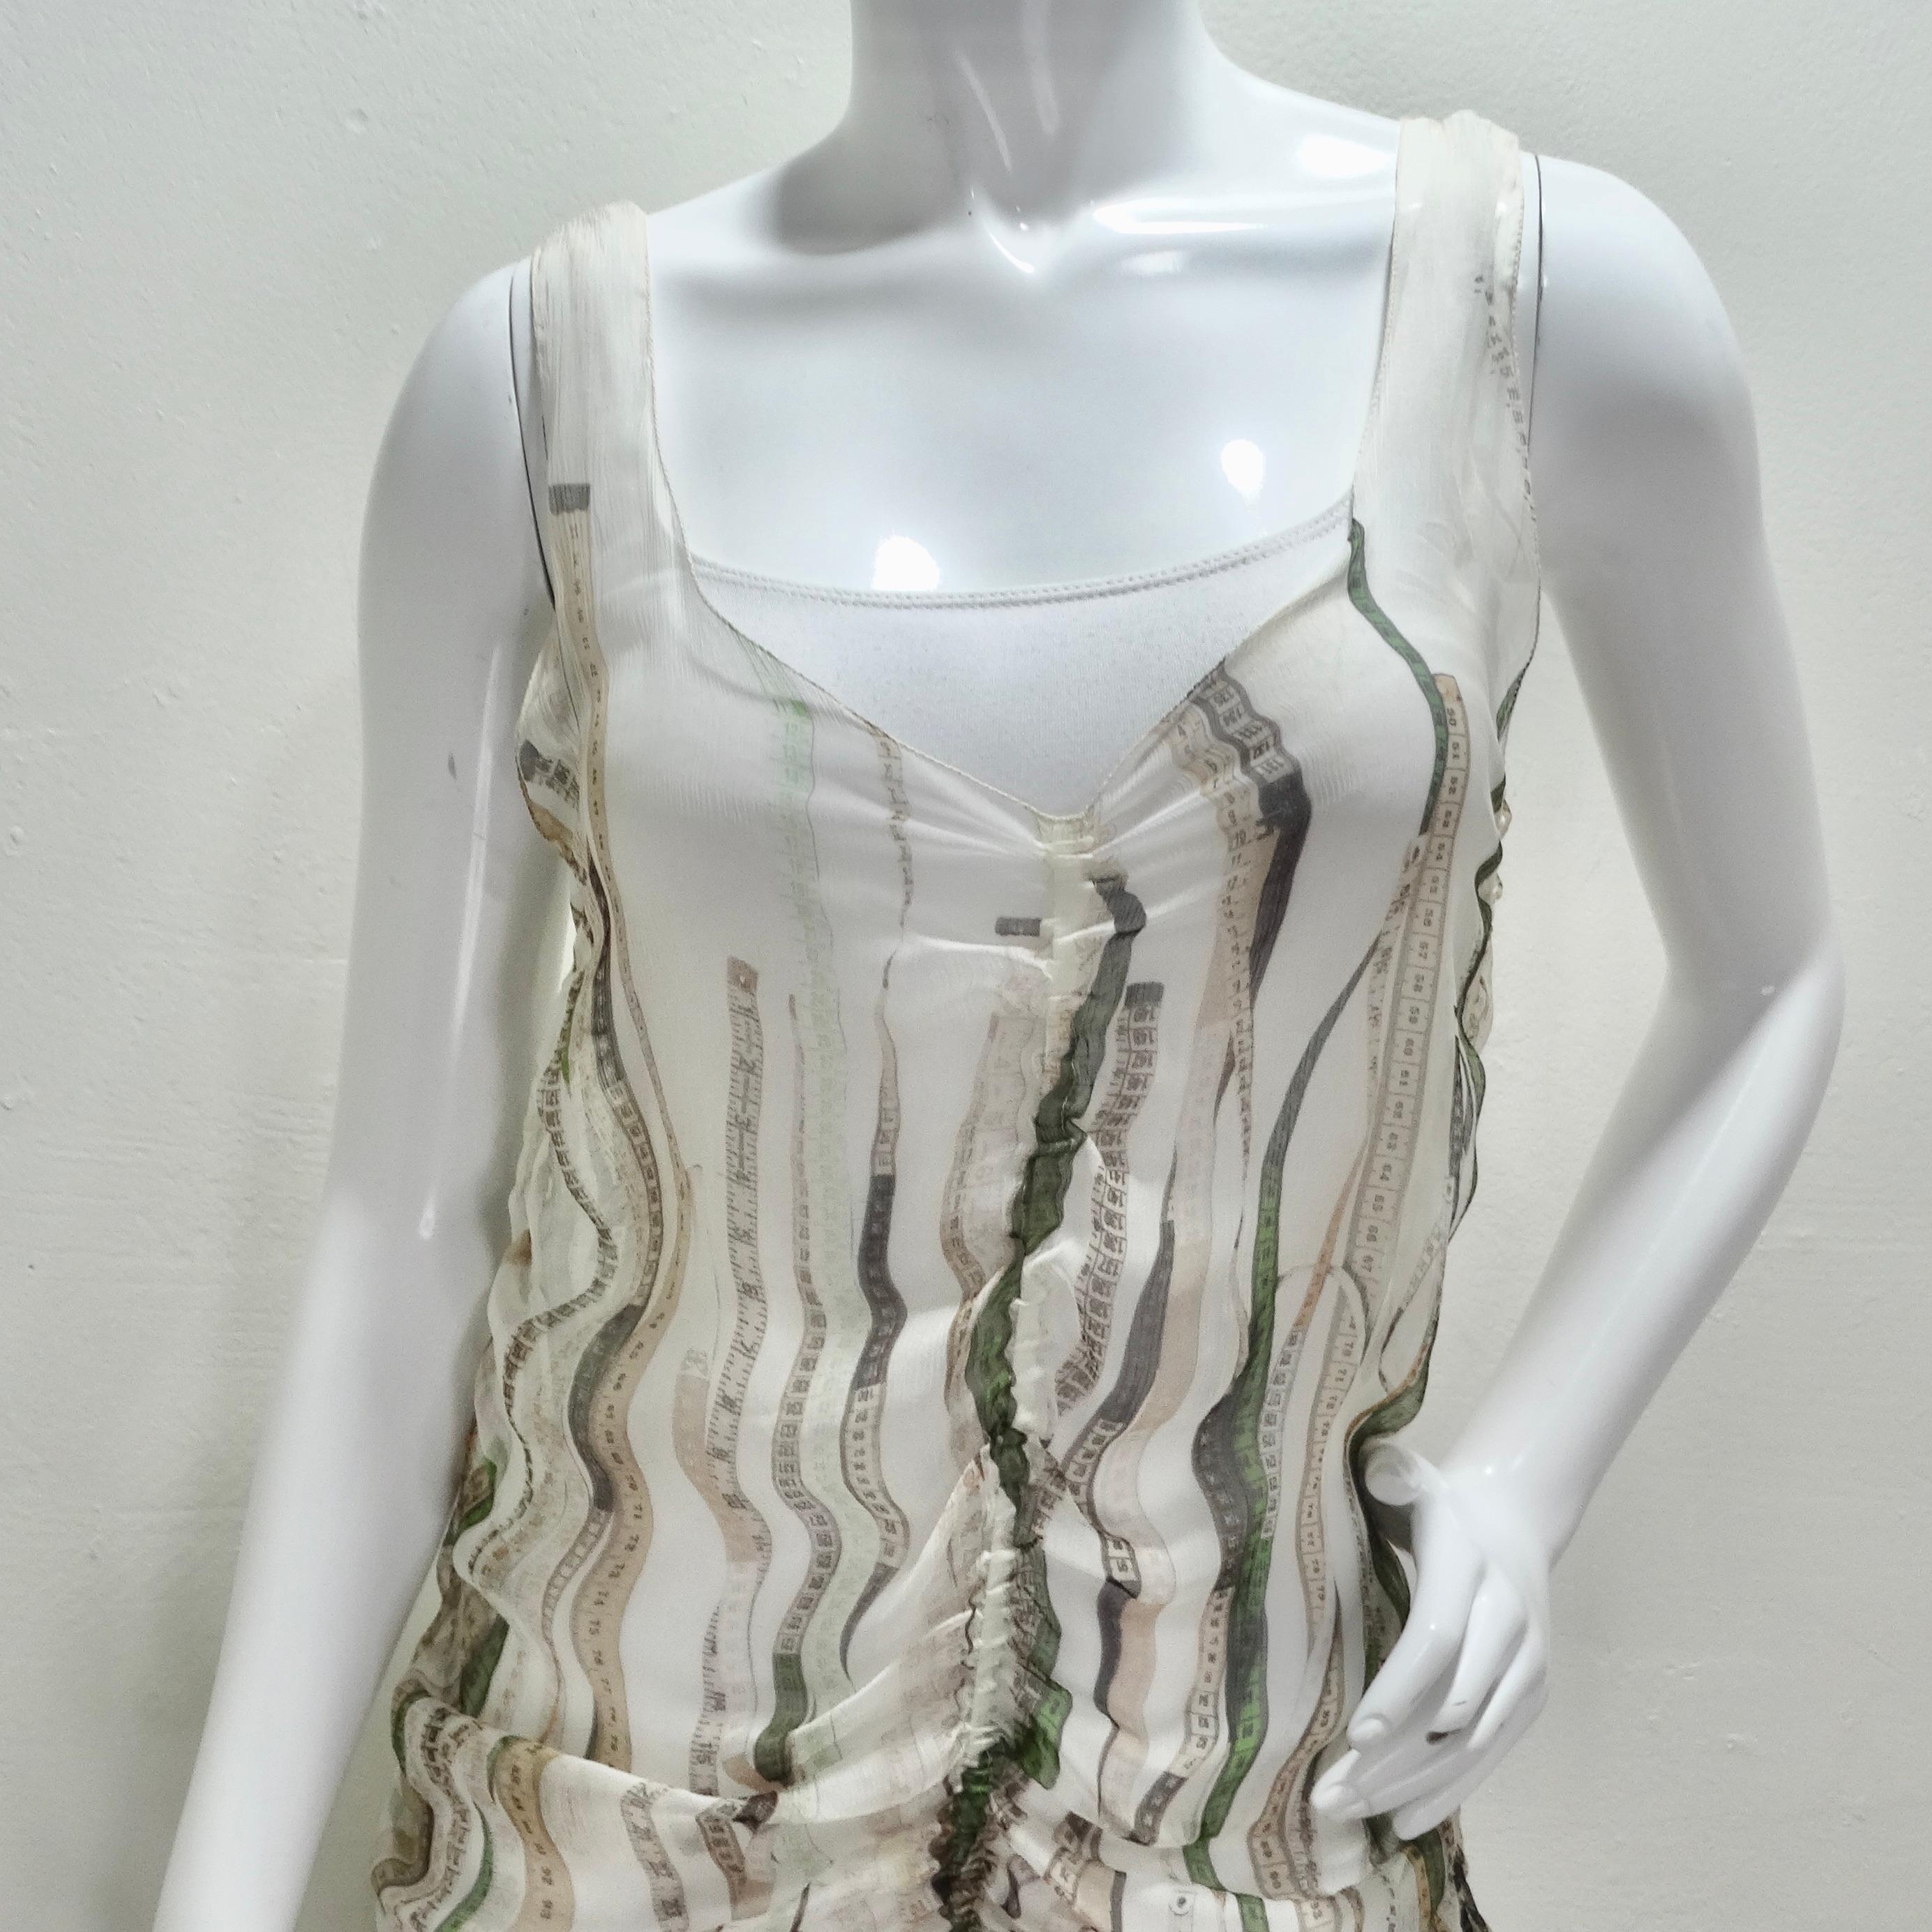 Élevez votre style avec cette robe Vintage Jean Paul Gaultier froncée à imprimé ruban à mesurer. Fabrice en tissu léger et transparent, orné de rubans à mesurer verts et neutres, cette robe est un véritable atout mode. Son effet ruchant unique sur